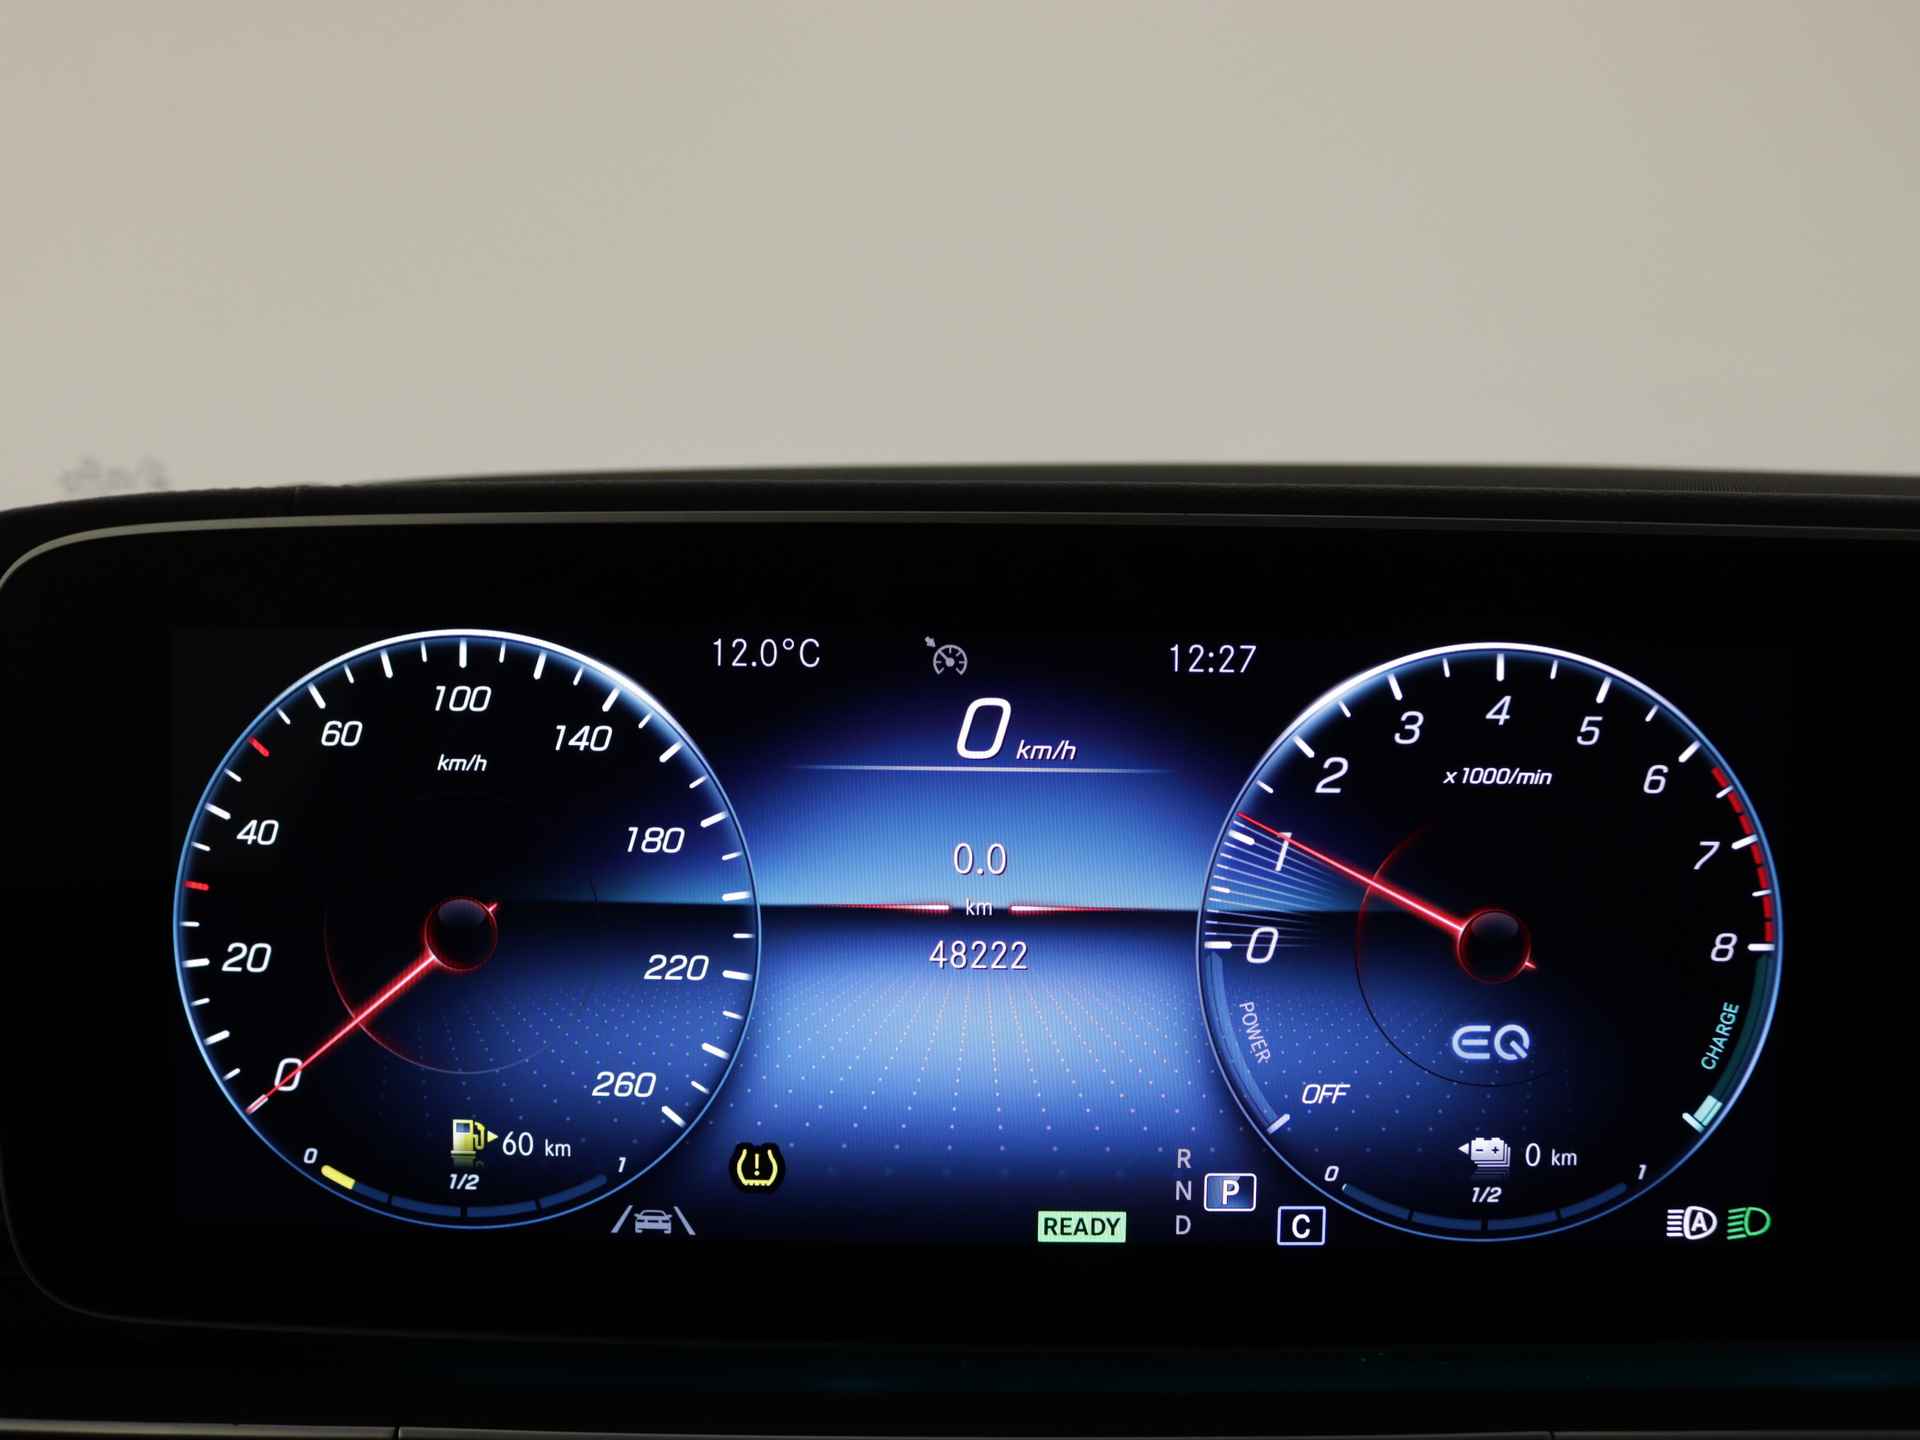 Mercedes-Benz GLE 350 e 4-MATIC AMG Nightpakket Limited 5 spaaks lichtmetalen velgen | Trekhaak | Airmatic | Treeplanken | Alarm klasse 3 |  Augmented Reality | sfeerverlichting | DAB | Parking support | inclusief 24 maanden MB Certified garantie voor europa - 7/45